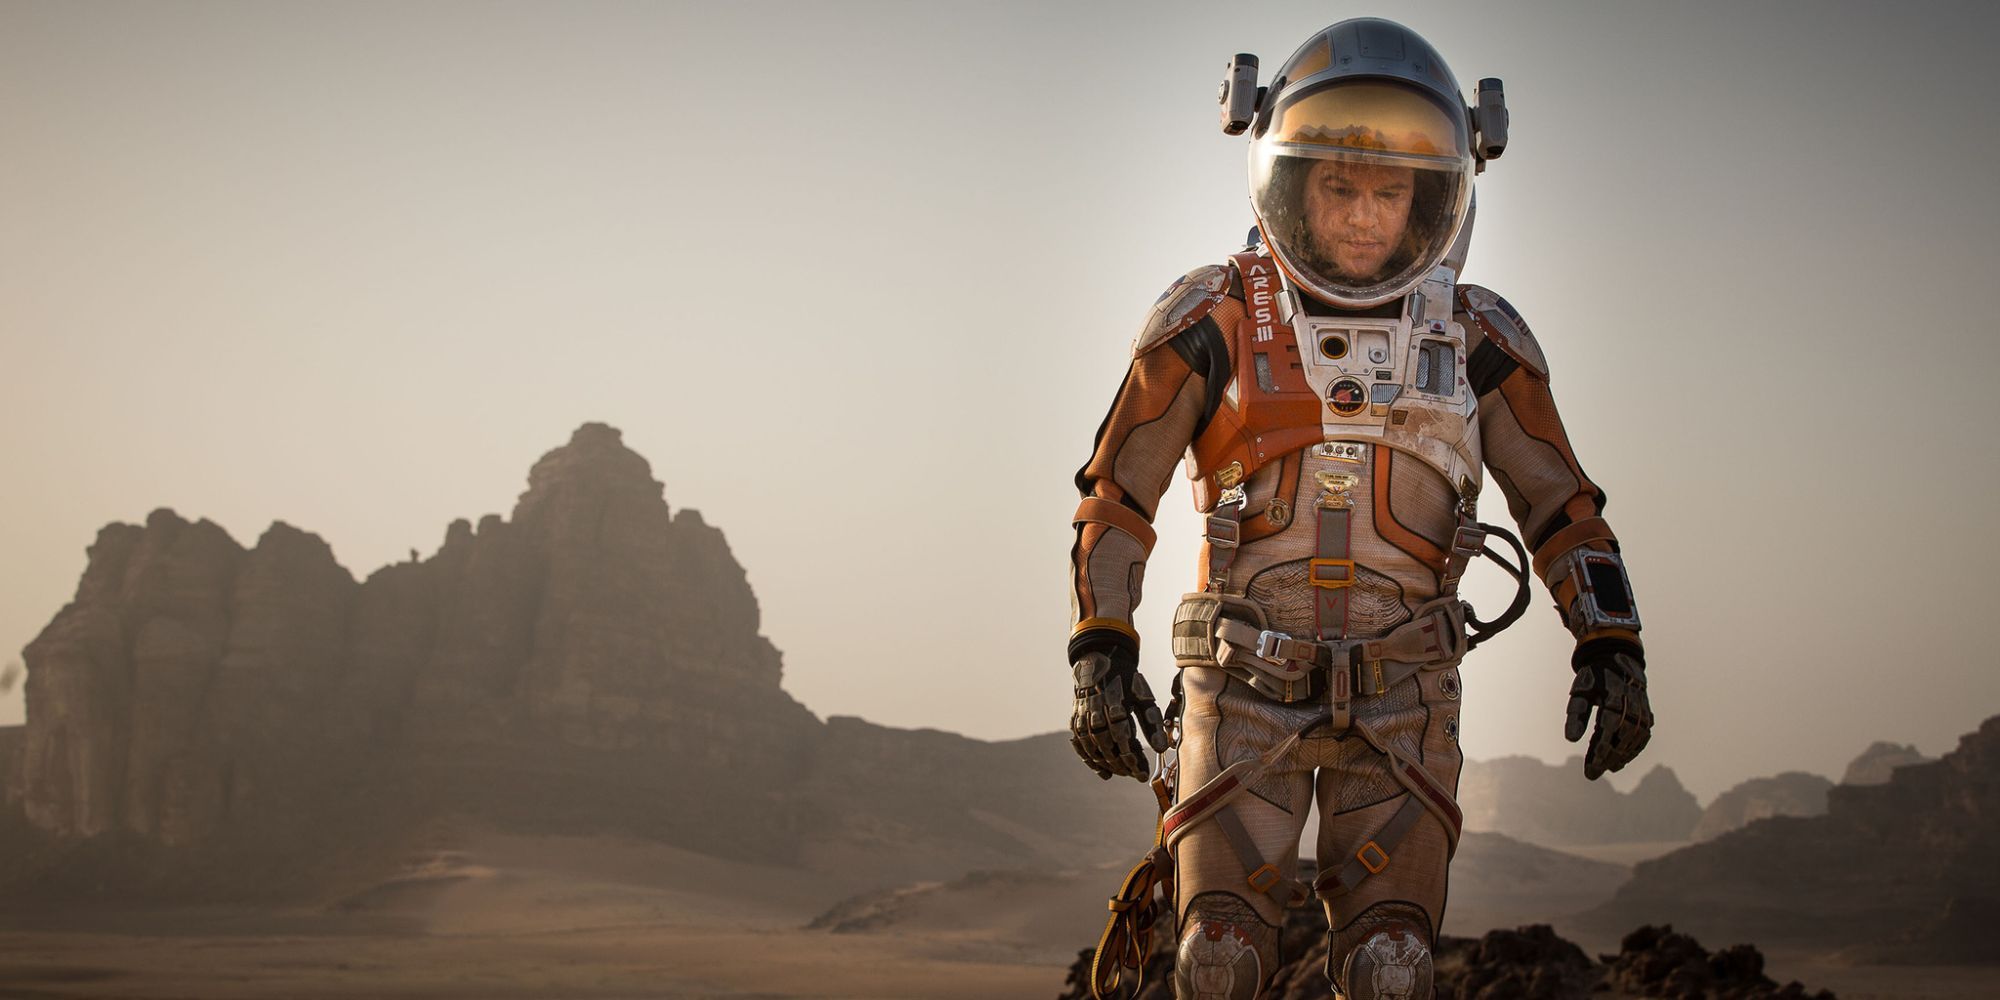 Matt Damon wears a spacesuit on Mars in The Martian